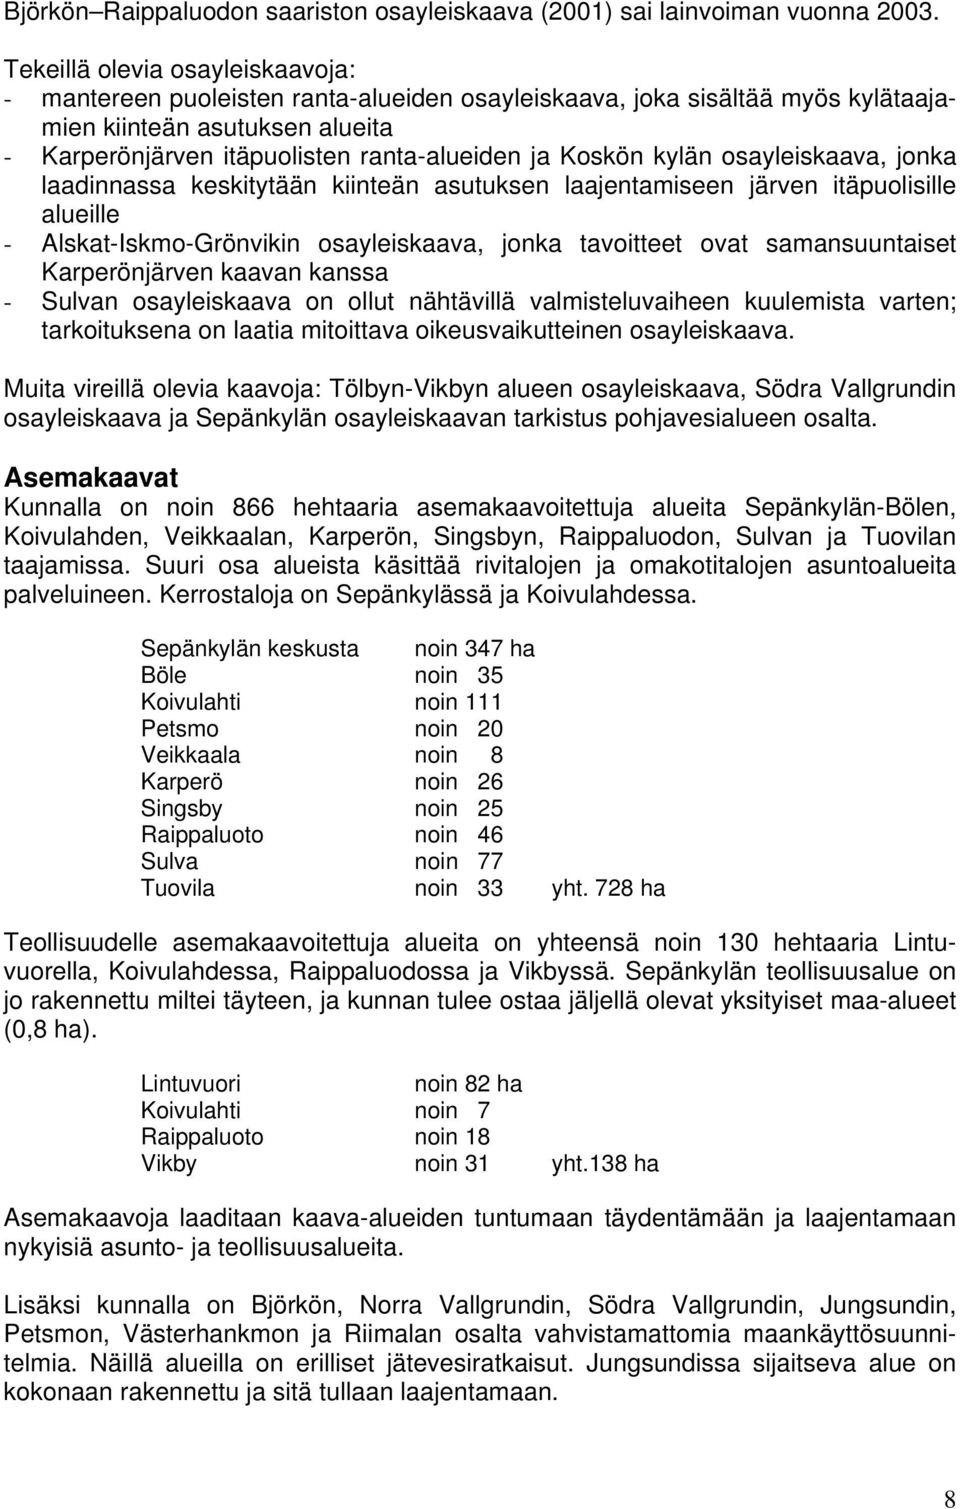 Koskön kylän osayleiskaava, jonka laadinnassa keskitytään kiinteän asutuksen laajentamiseen järven itäpuolisille alueille - Alskat-Iskmo-Grönvikin osayleiskaava, jonka tavoitteet ovat samansuuntaiset